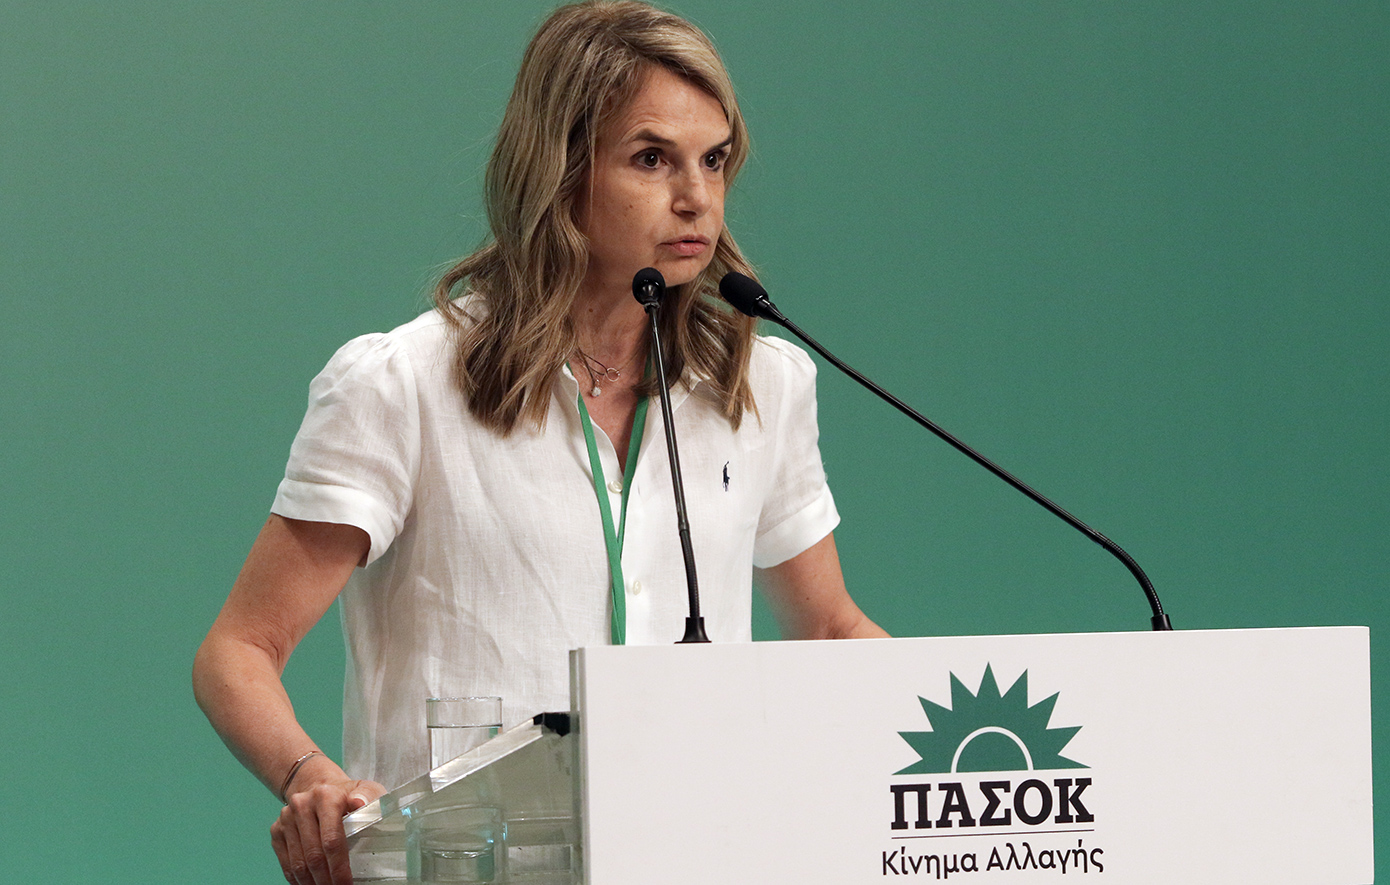 Μιλένα Αποστολάκη: Οι υποψήφιοι πρέπει να είναι έτοιμοι να αναλάβουν την ευθύνη διακυβέρνησης της χώρας